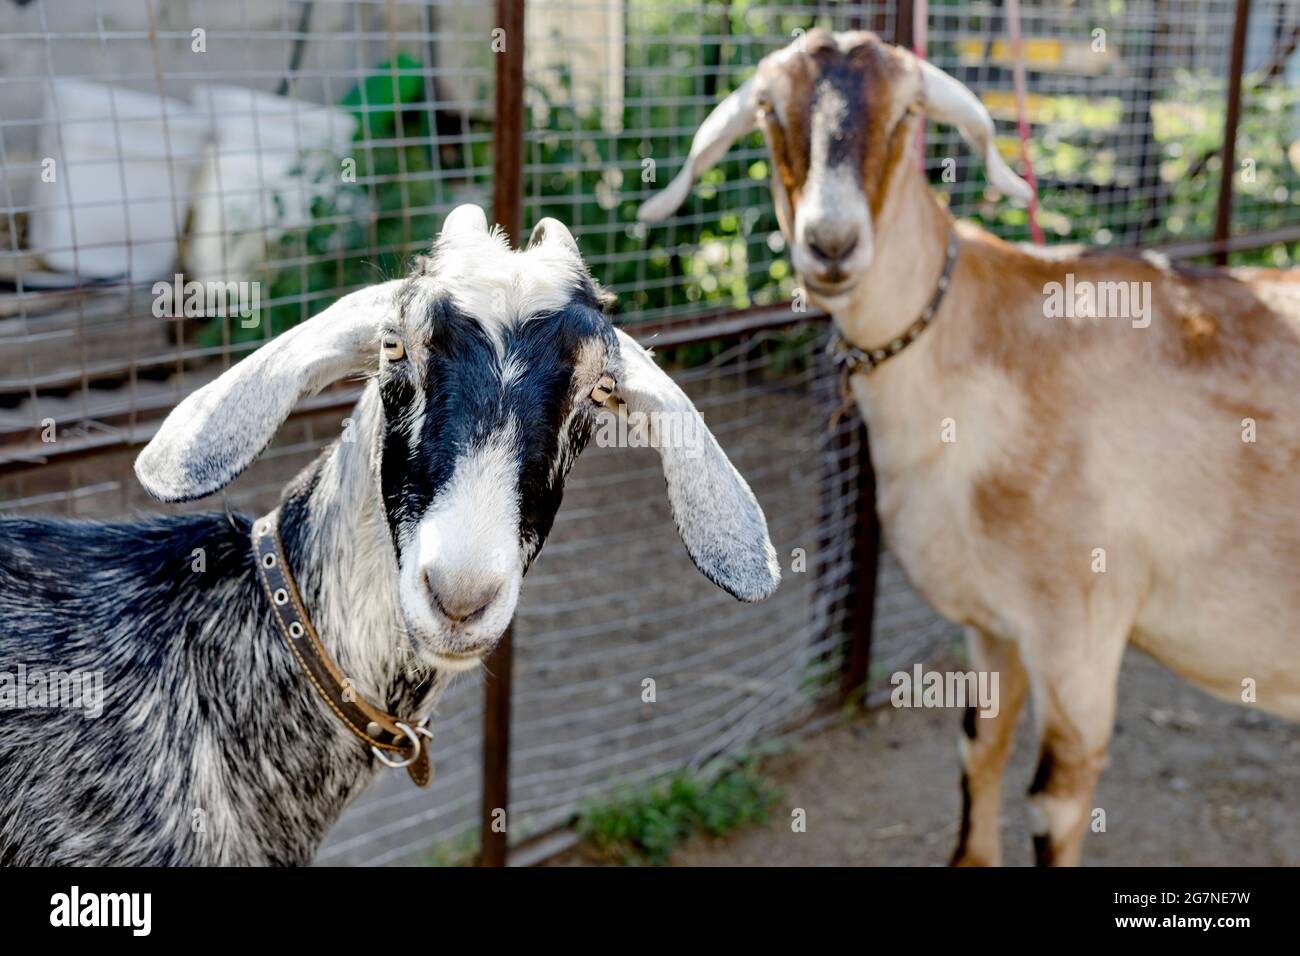 Zwei nubische Ziegen mit Halsbändern schauen interessiert auf die Kamera. Schärfentiefe. Konzentrieren Sie sich auf eine der Ziegen. Stockfoto